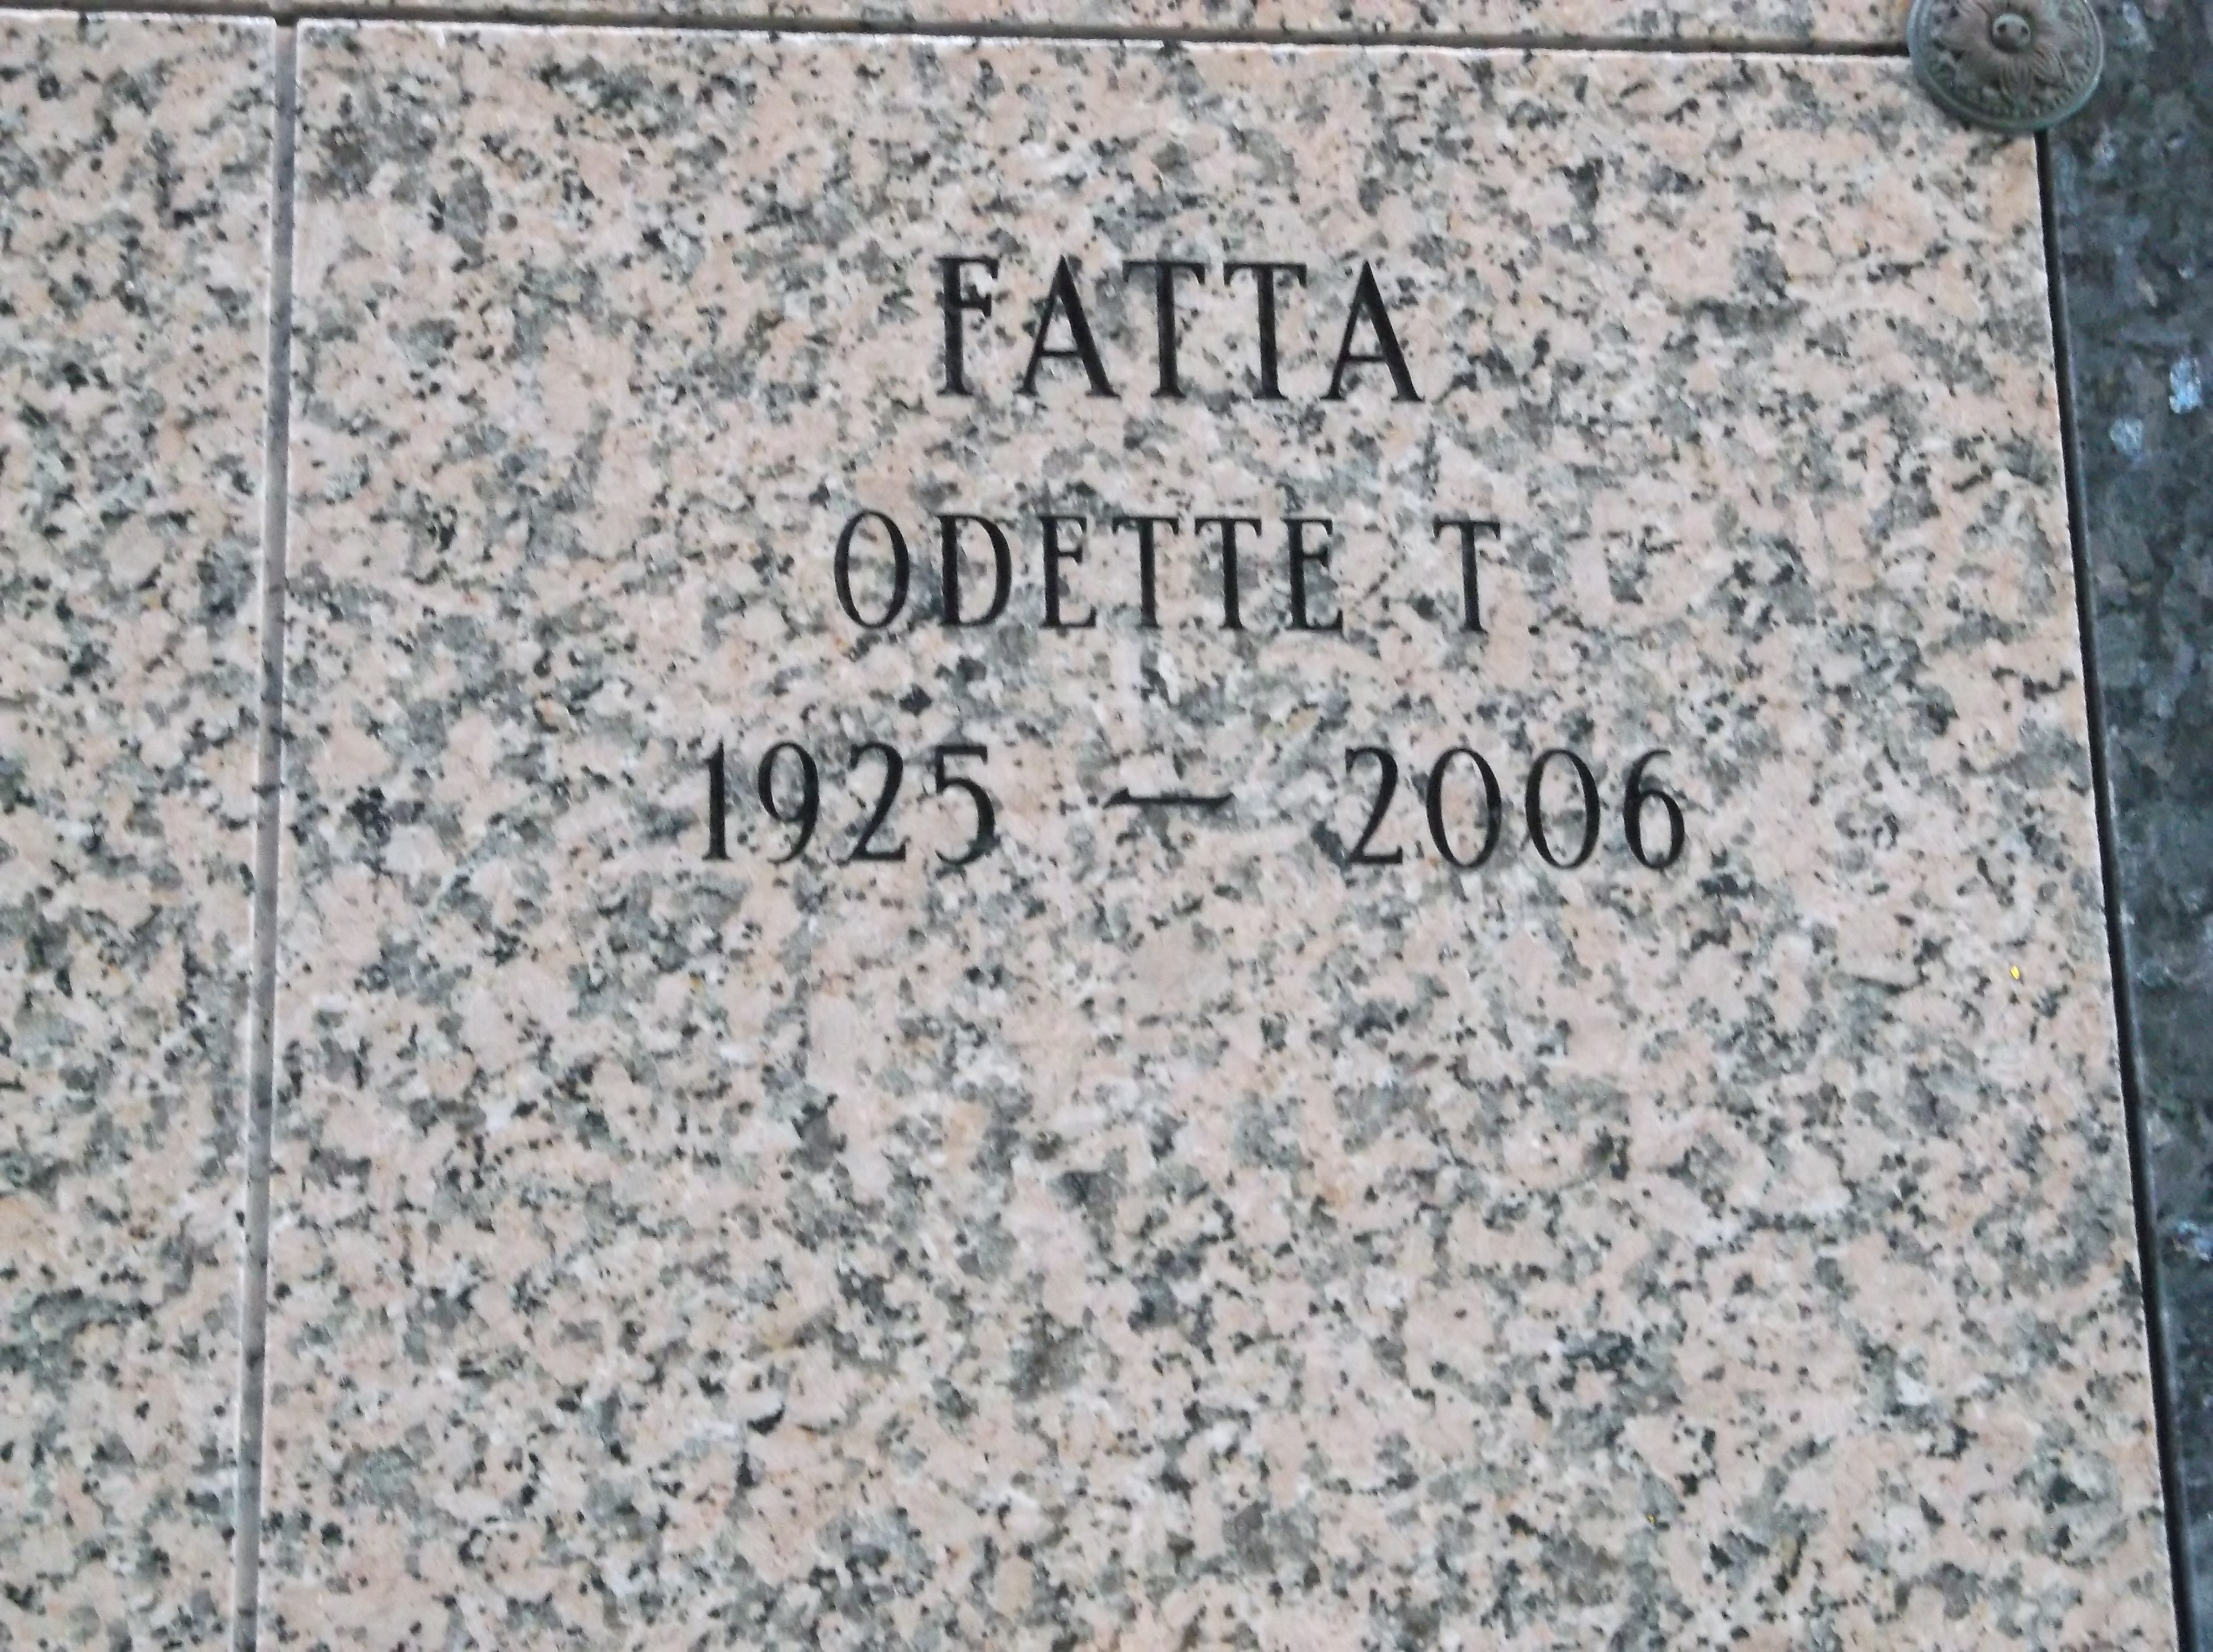 Odette T Fatta